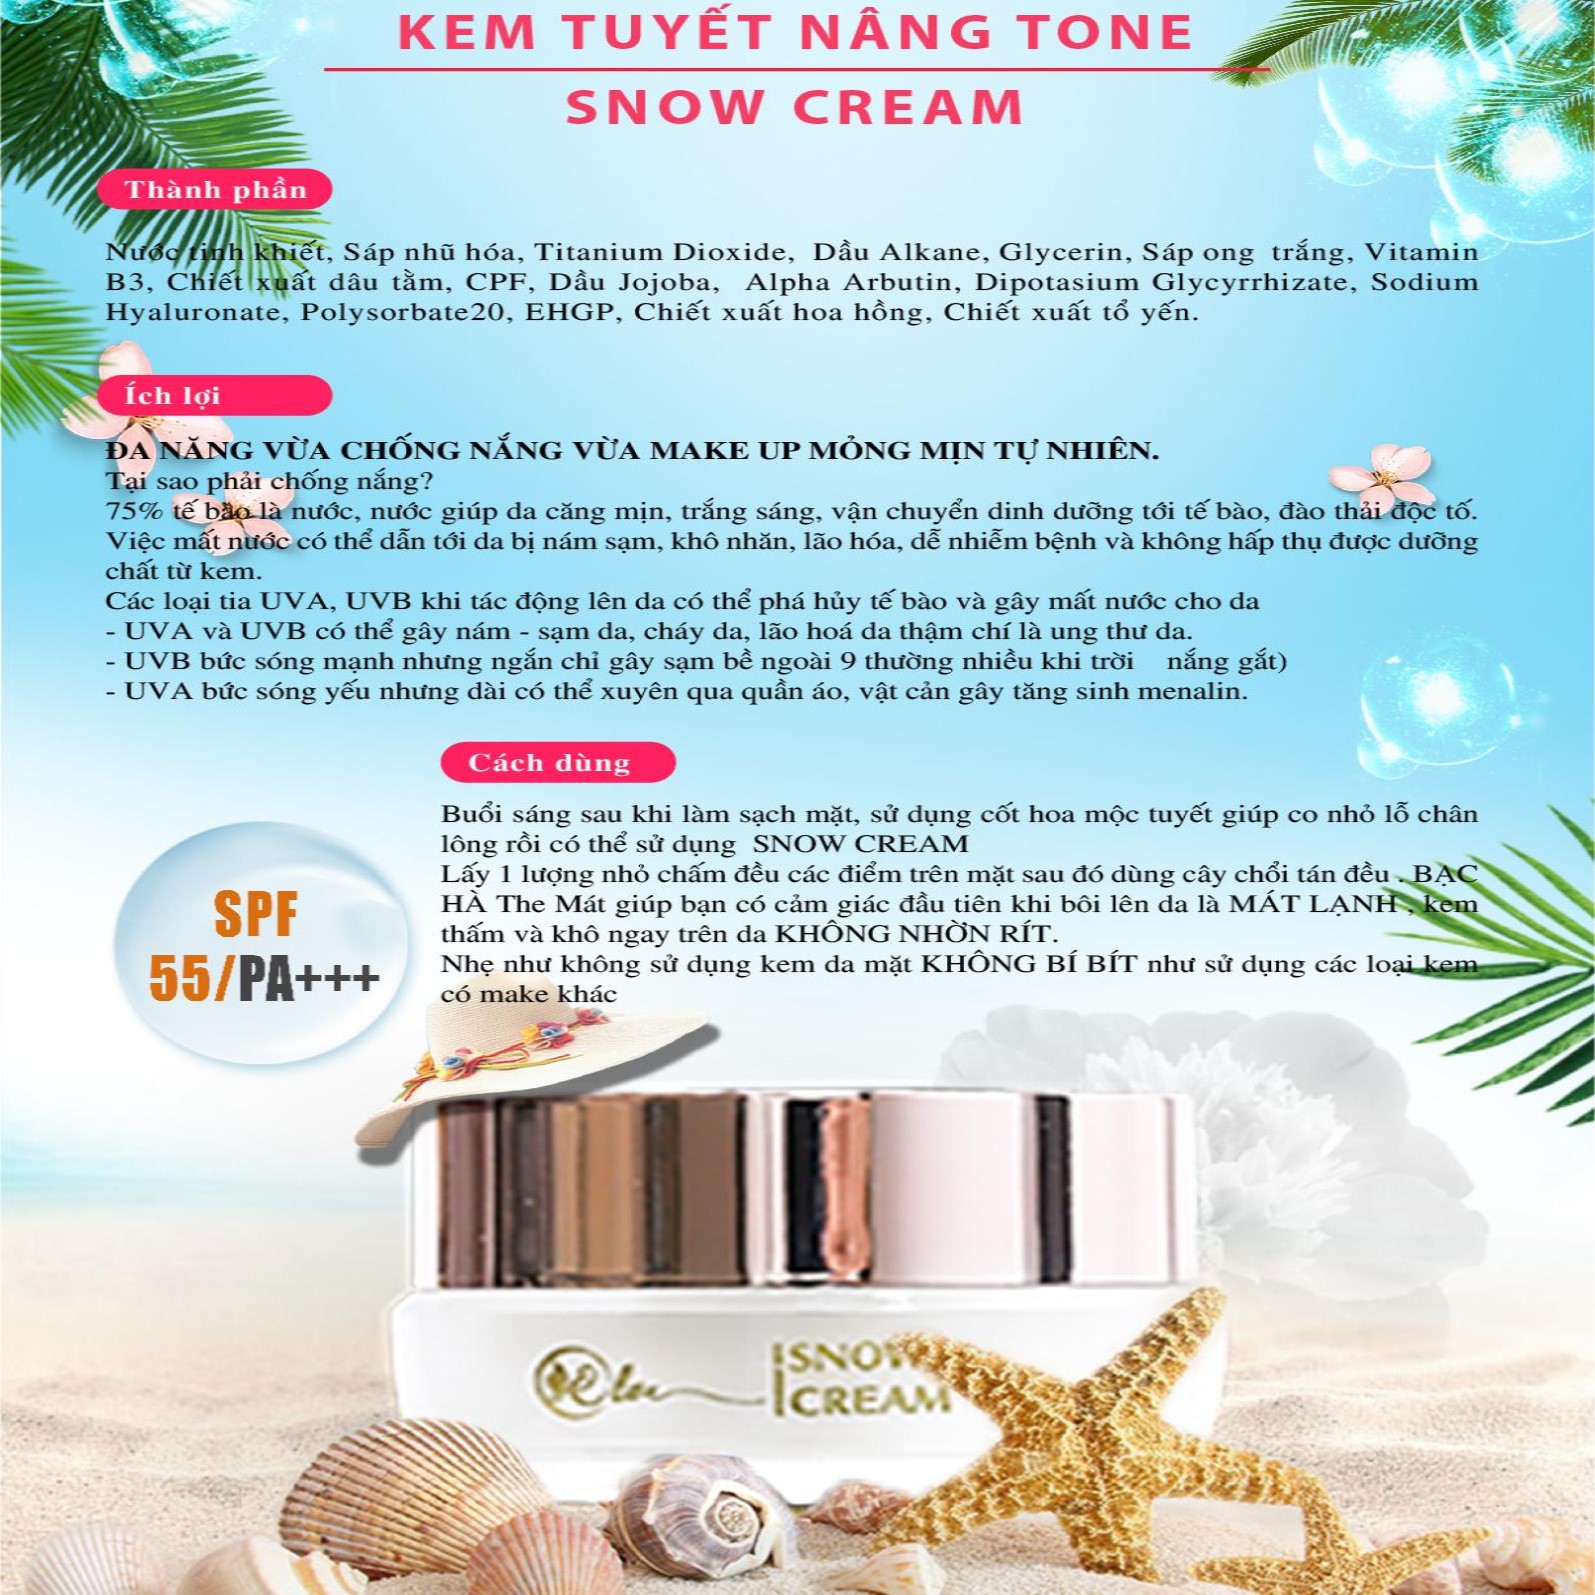 Kem Ngày Elite Snow Cream - 30 Gram - Hàng Chính Hãng - Tinh Chất Dưỡng Trắng - Make Up - Với SPF 55/PA+++ Độ Chống Nắng Cao - Bảo Vệ Da Tối Ưu Khỏi Tia Ngoại Ánh Sáng Mặt Trời.